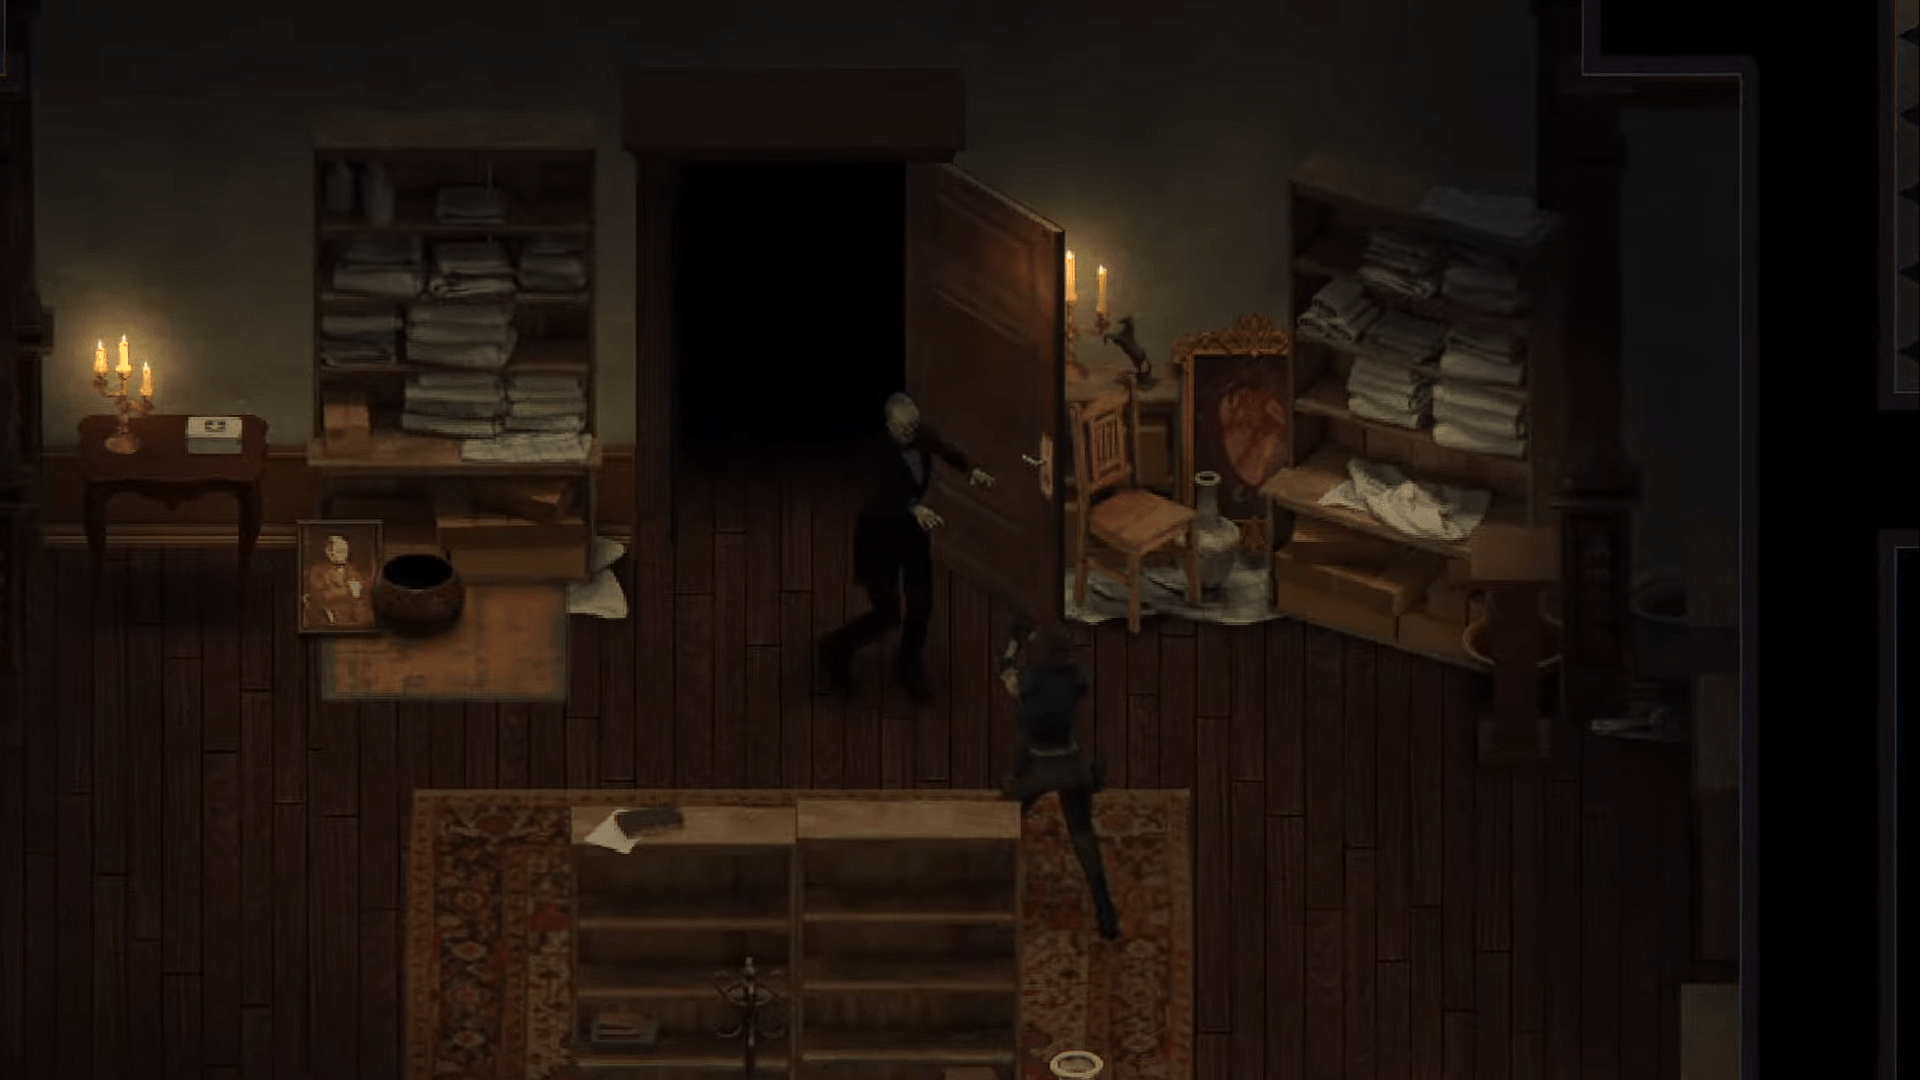 You Will Die Here Tonight – Trò chơi kinh dị sinh tồn mới lấy cảm hứng từ Resident Evil cổ điển nhưng độc lạ và hấp dẫn hơn